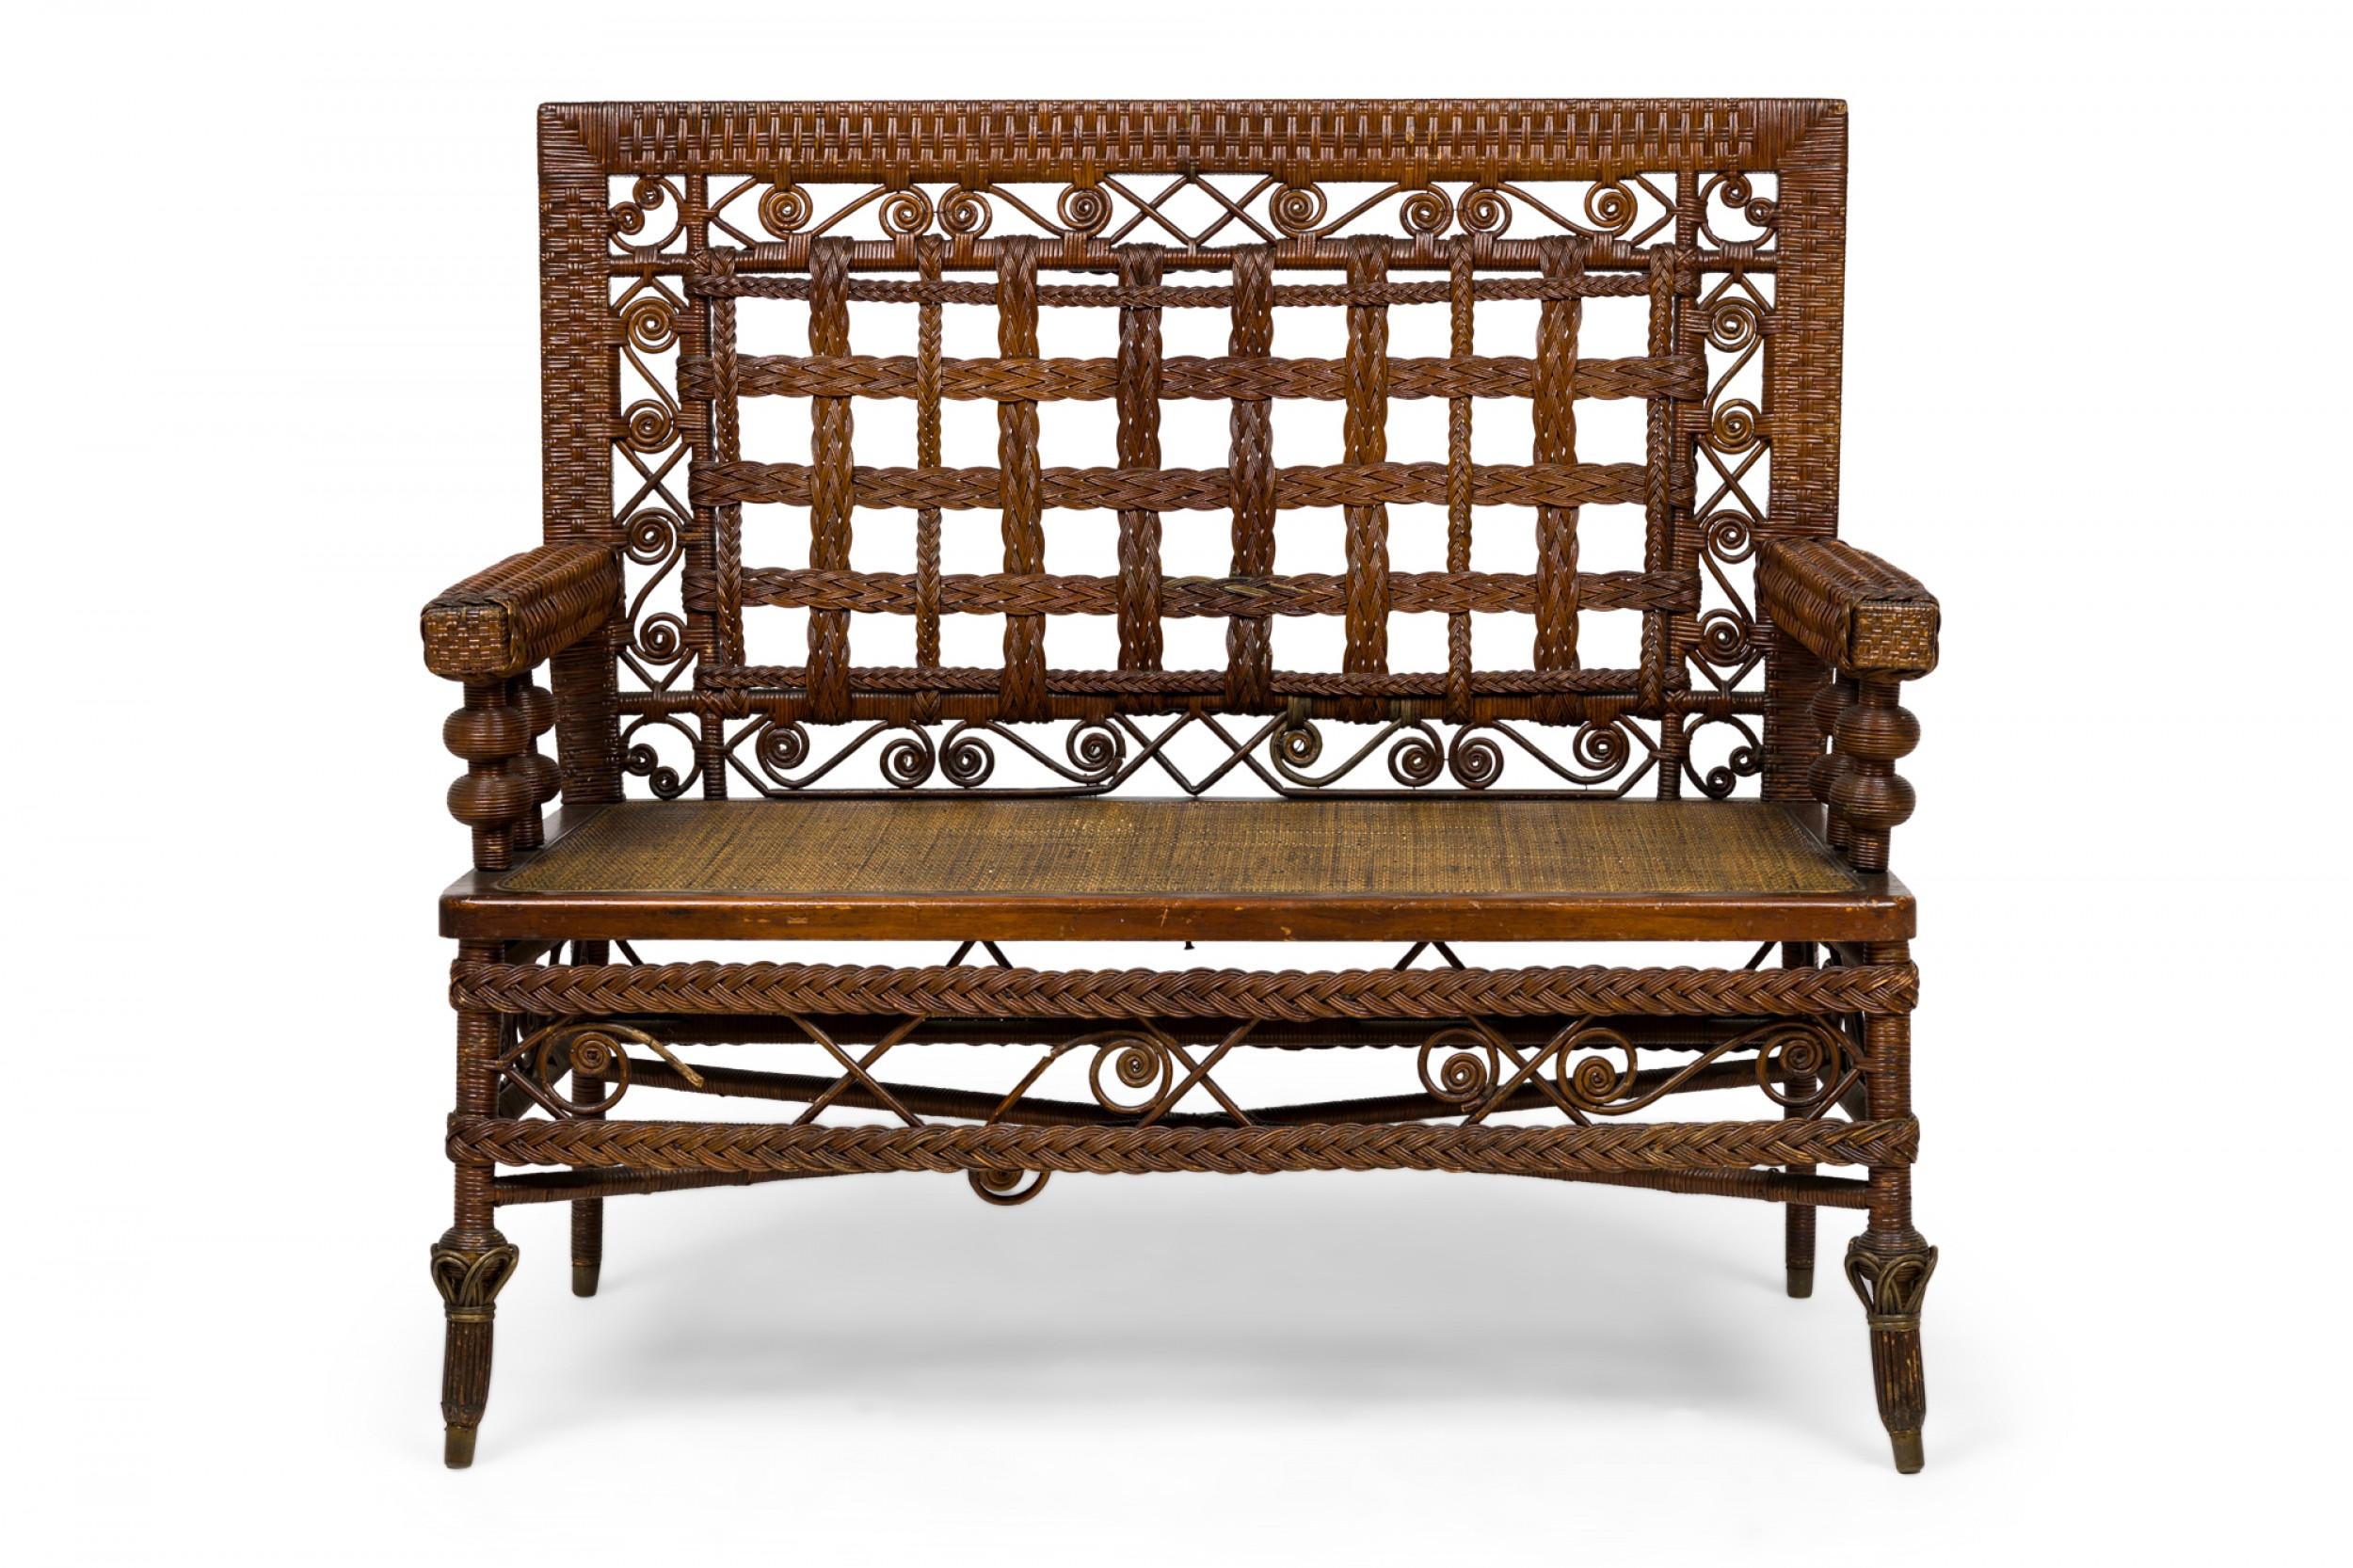 3 Stück amerikanische viktorianische Wicker Salon / Sitzgarnitur mit einem Sofa, Sessel und Stuhl mit Korbgeflecht gewickelt Frames, geflochtene dekorative Gittergeflecht zurück, und Scroll-Dekorationen, die jeweils mit einer primären